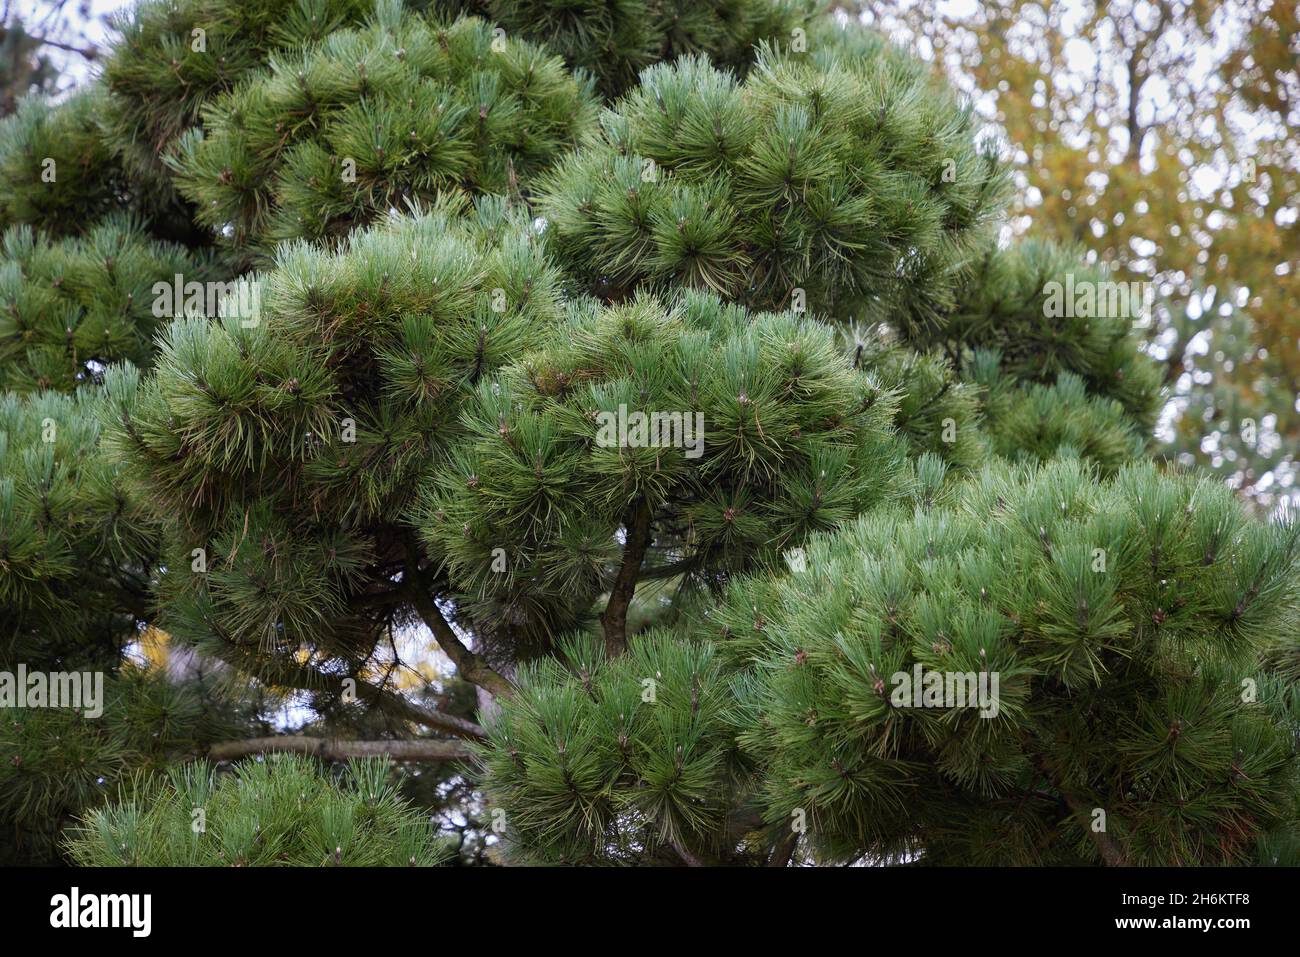 Pinus Nigra ssp. salzmanii. Stock Photo